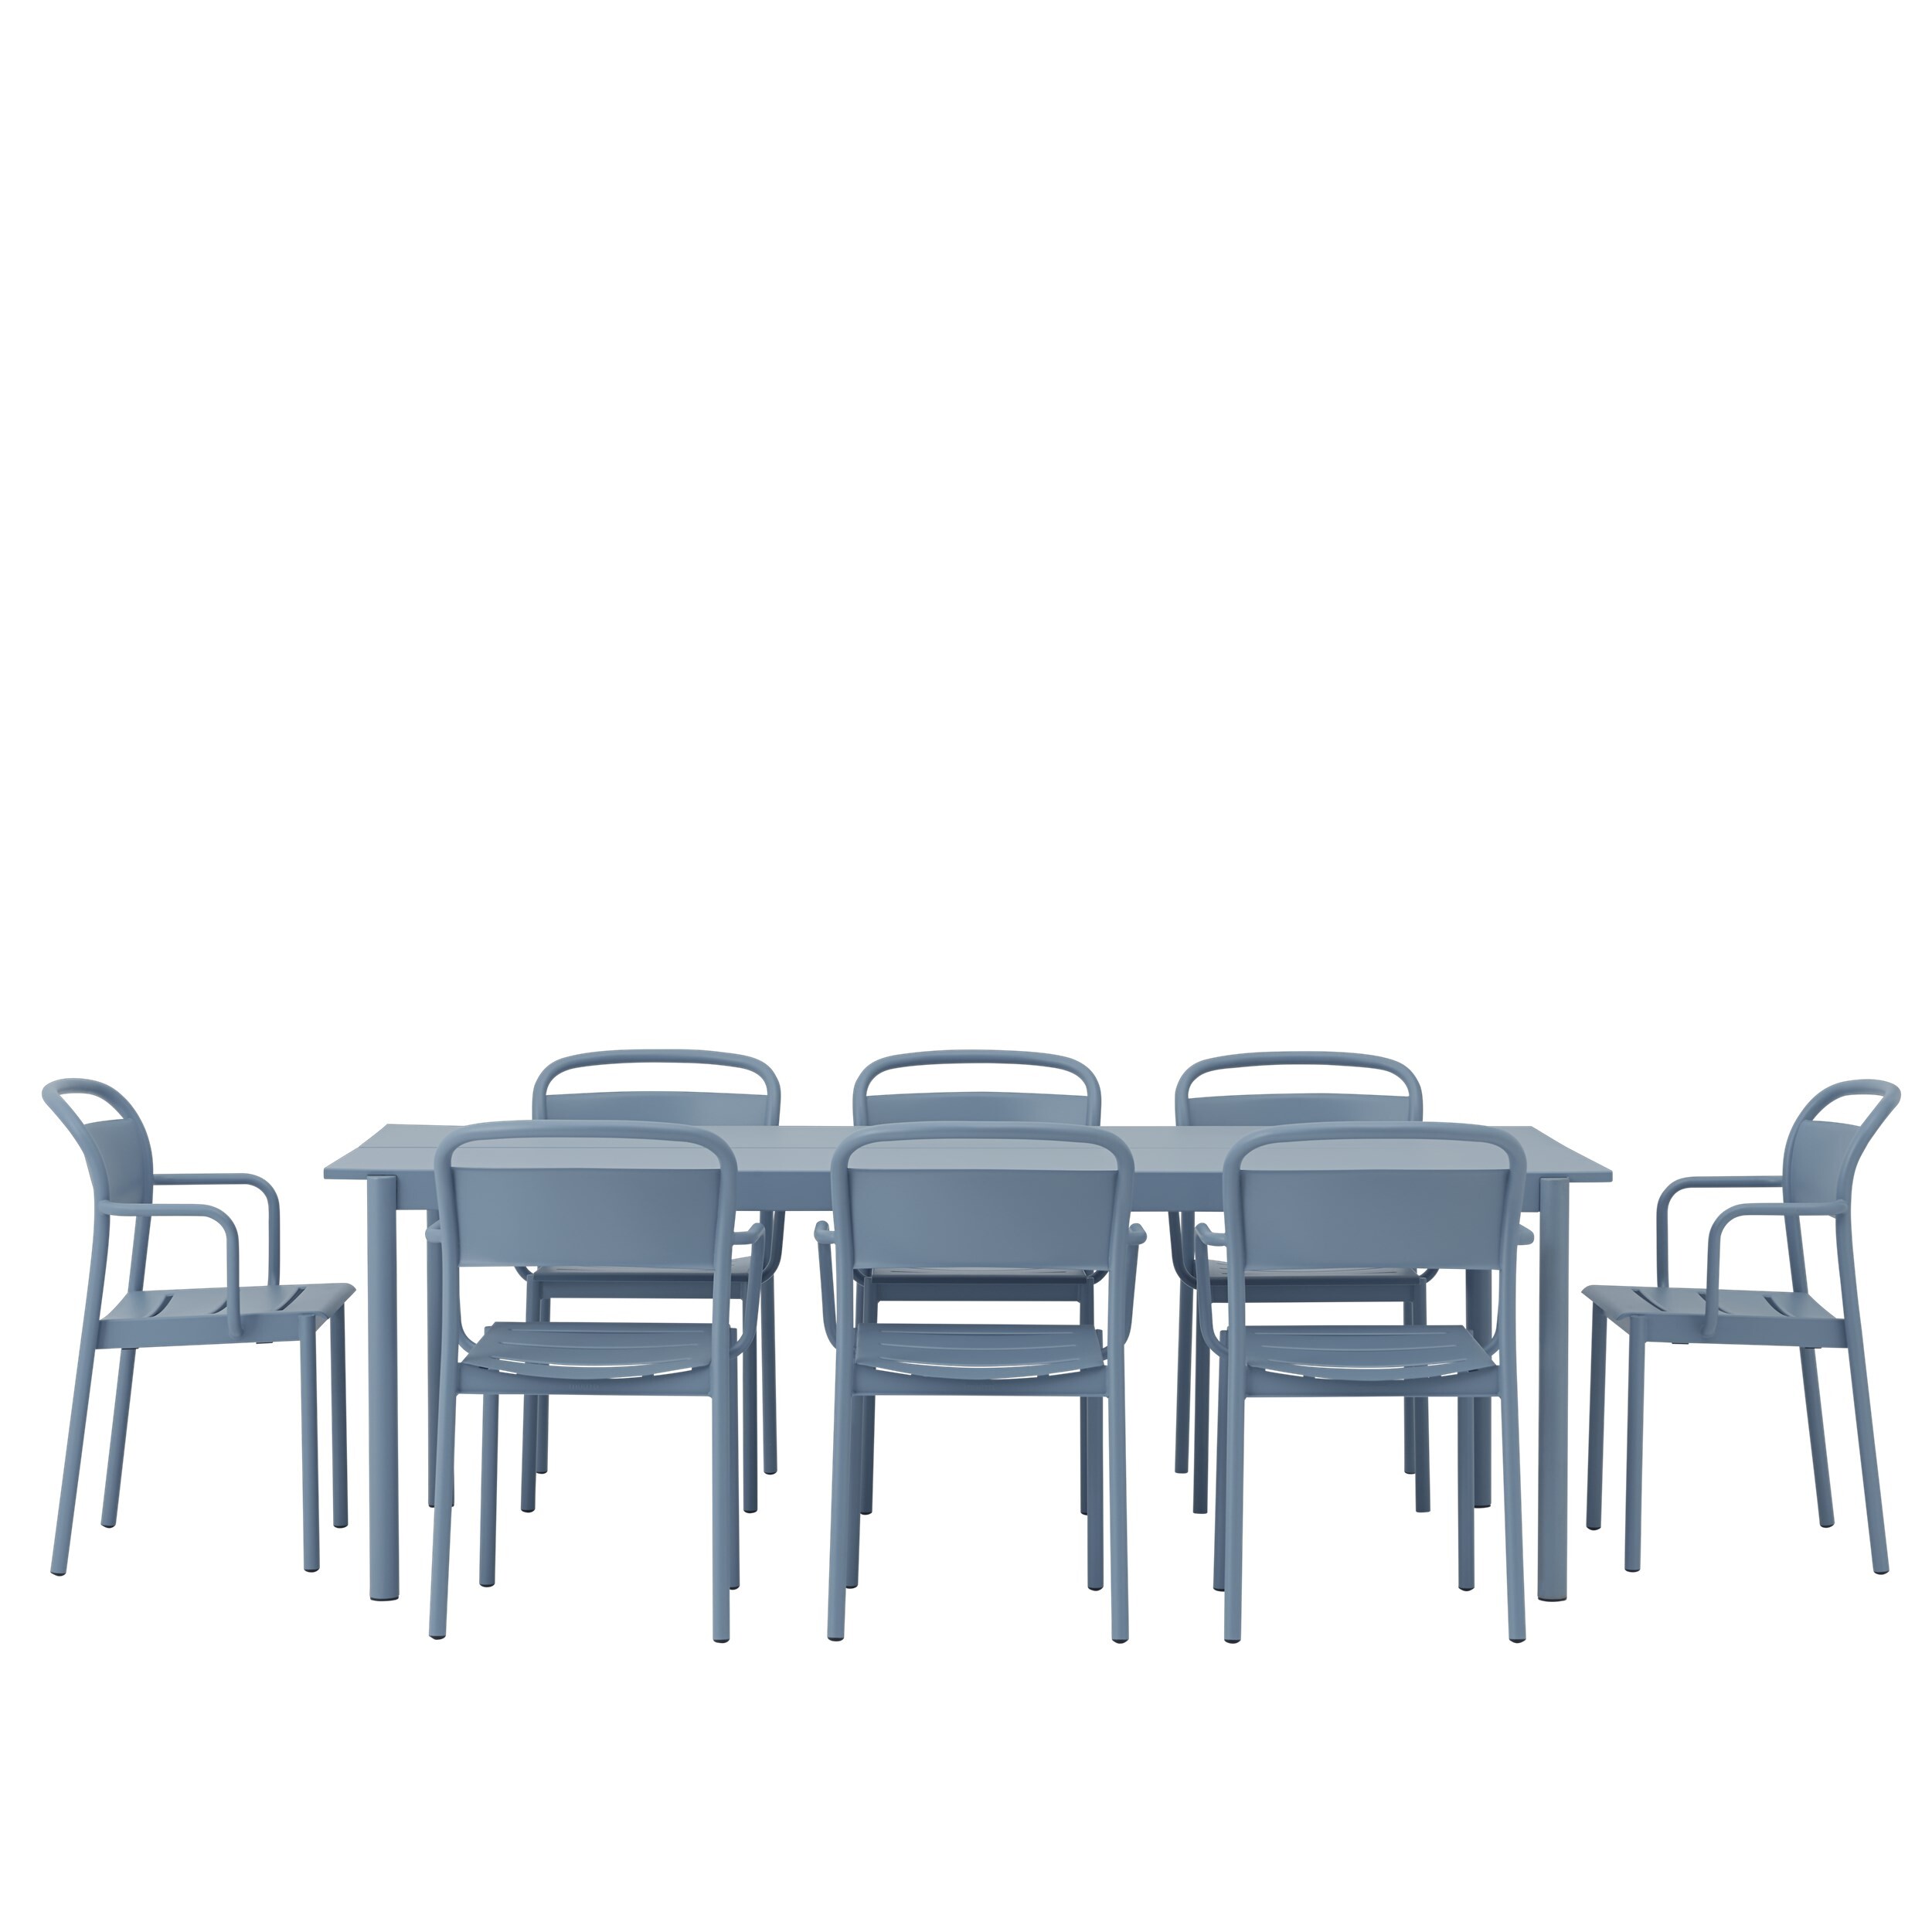 Mesa e cadeiras Linear Steel, com linhas retas e pernas semicirculares que se cruzam, proposta da Muuto